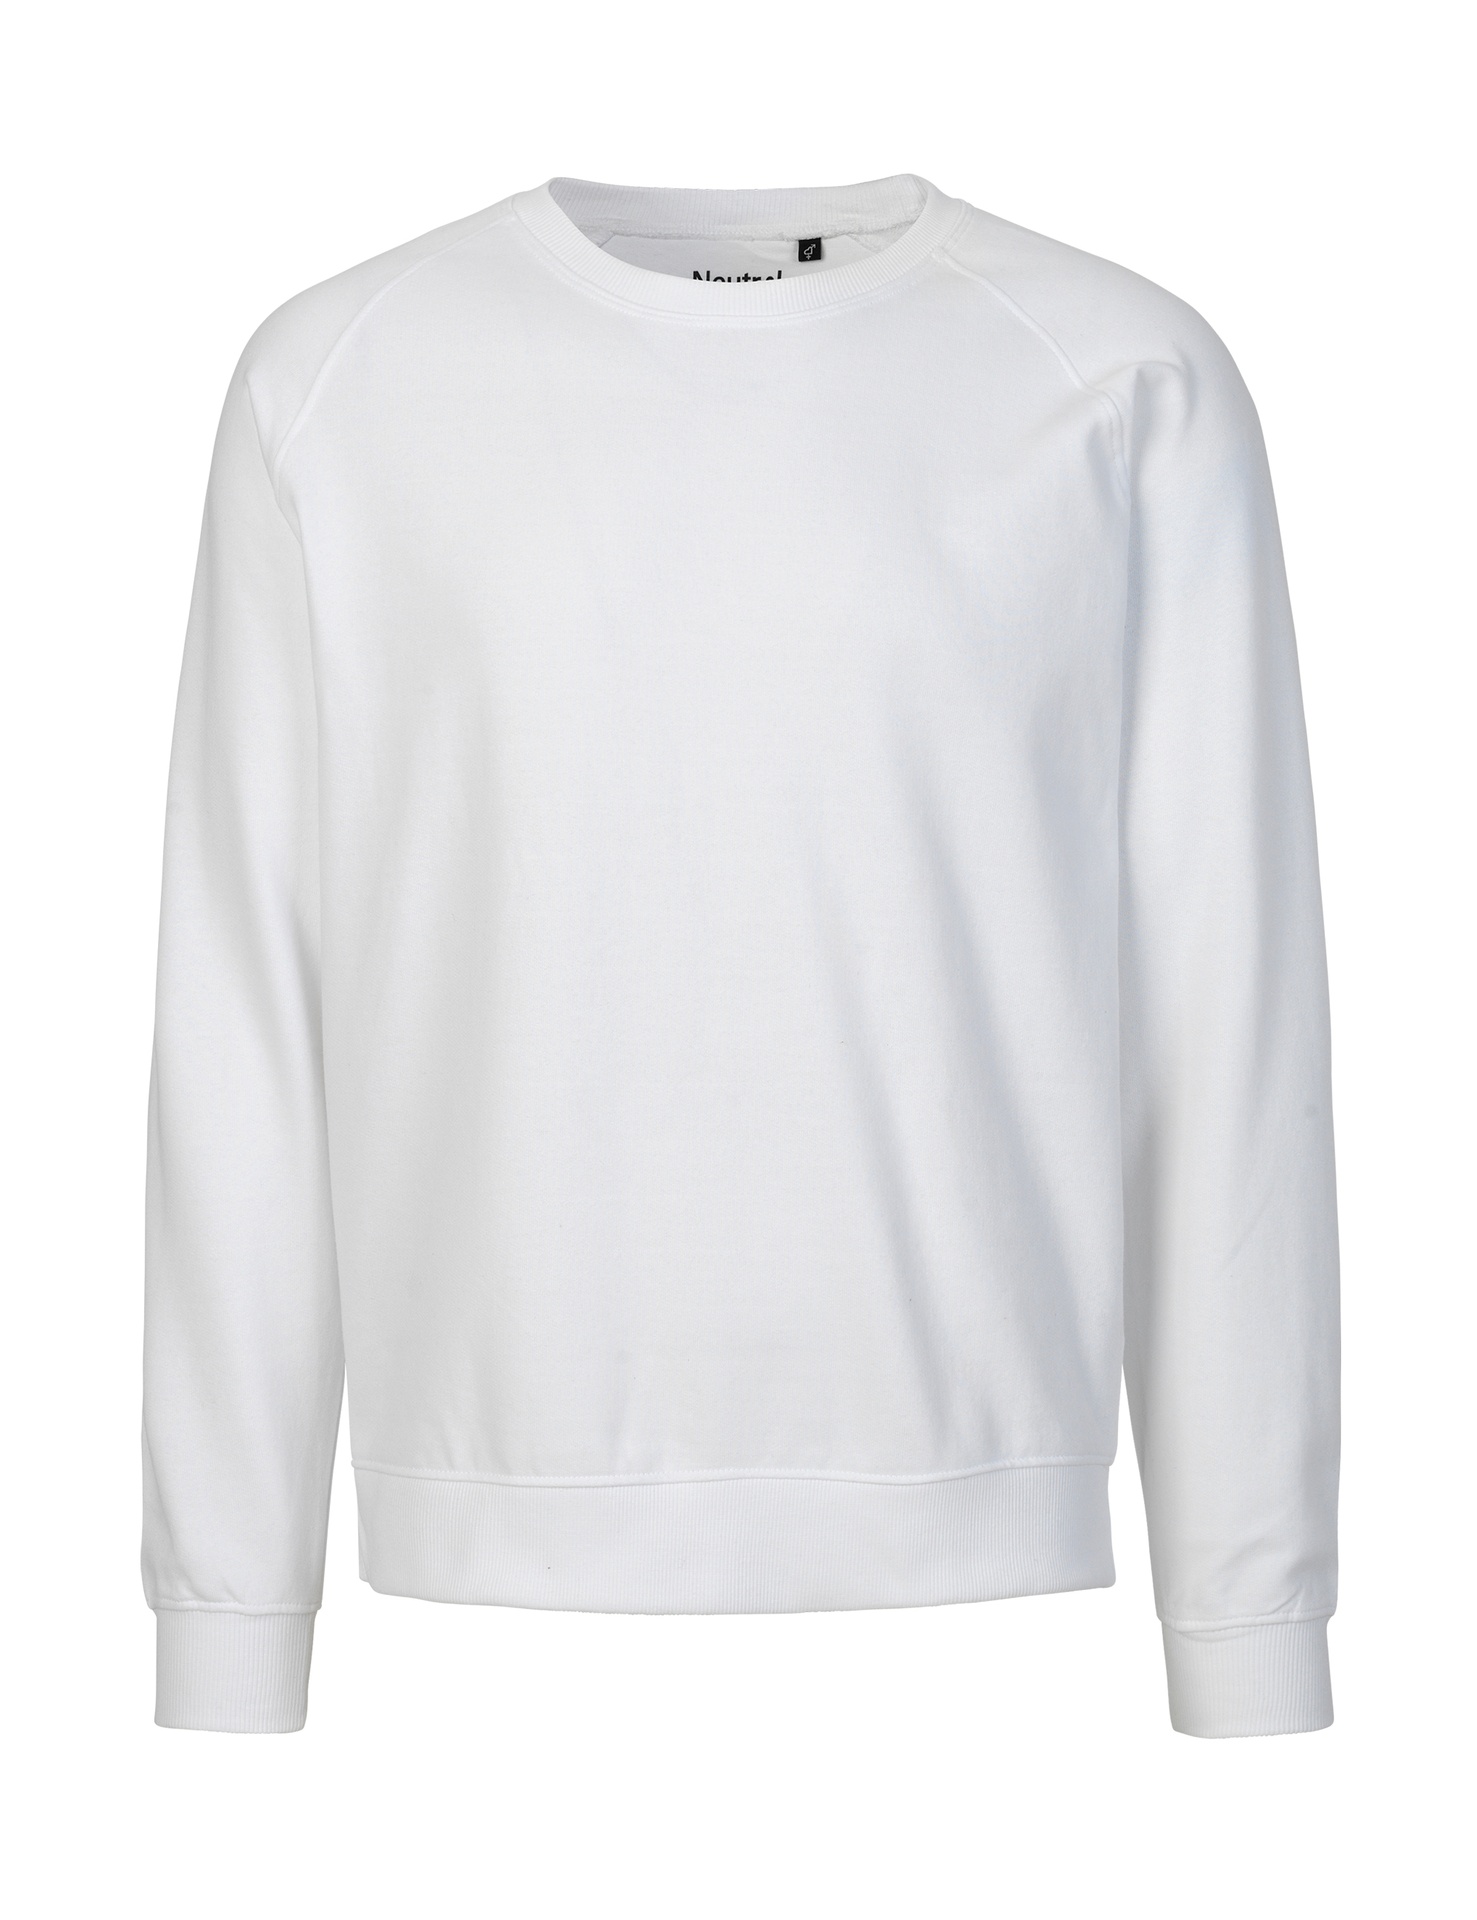 [PR/02658] Unisex Sweatshirt (White 01, 3XL)